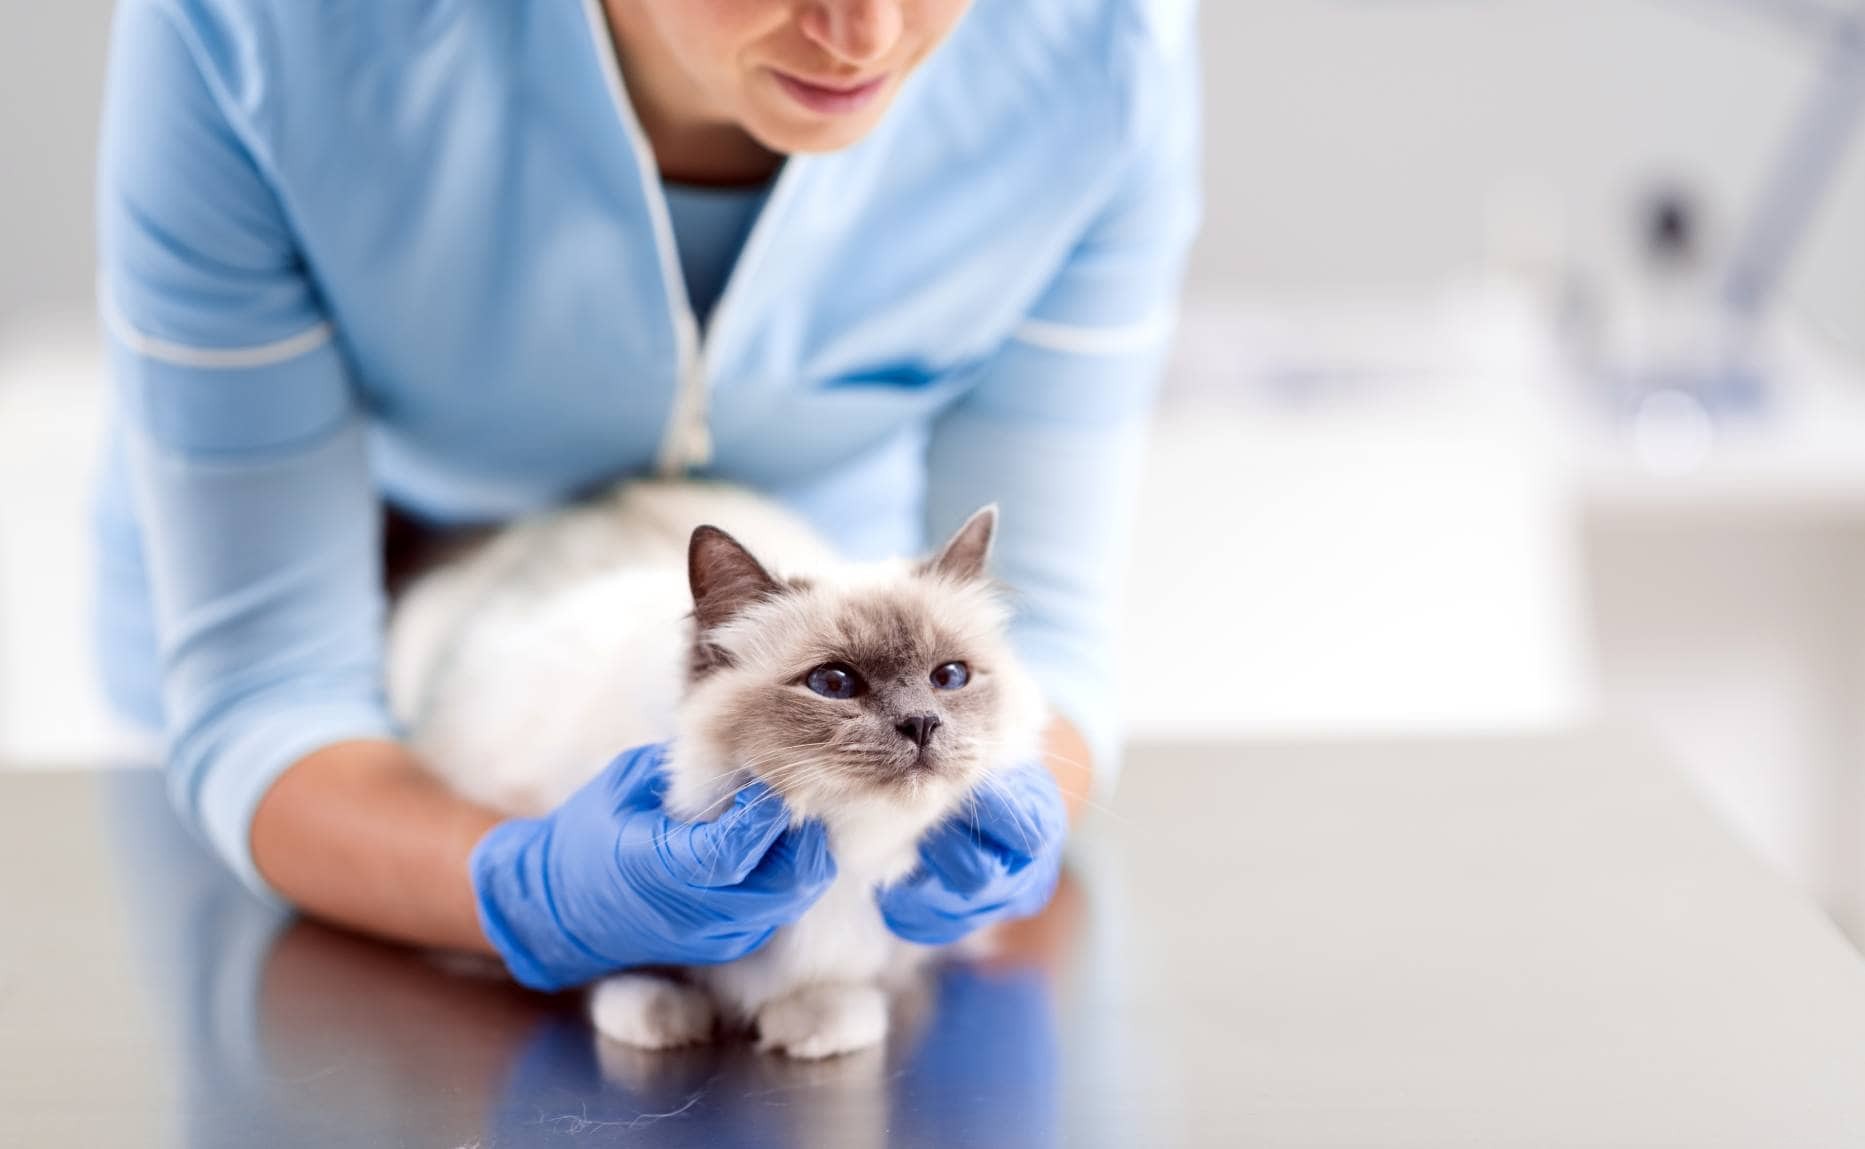 Malattia di Lyme nei gatti:sintomi, trattamento e prevenzione